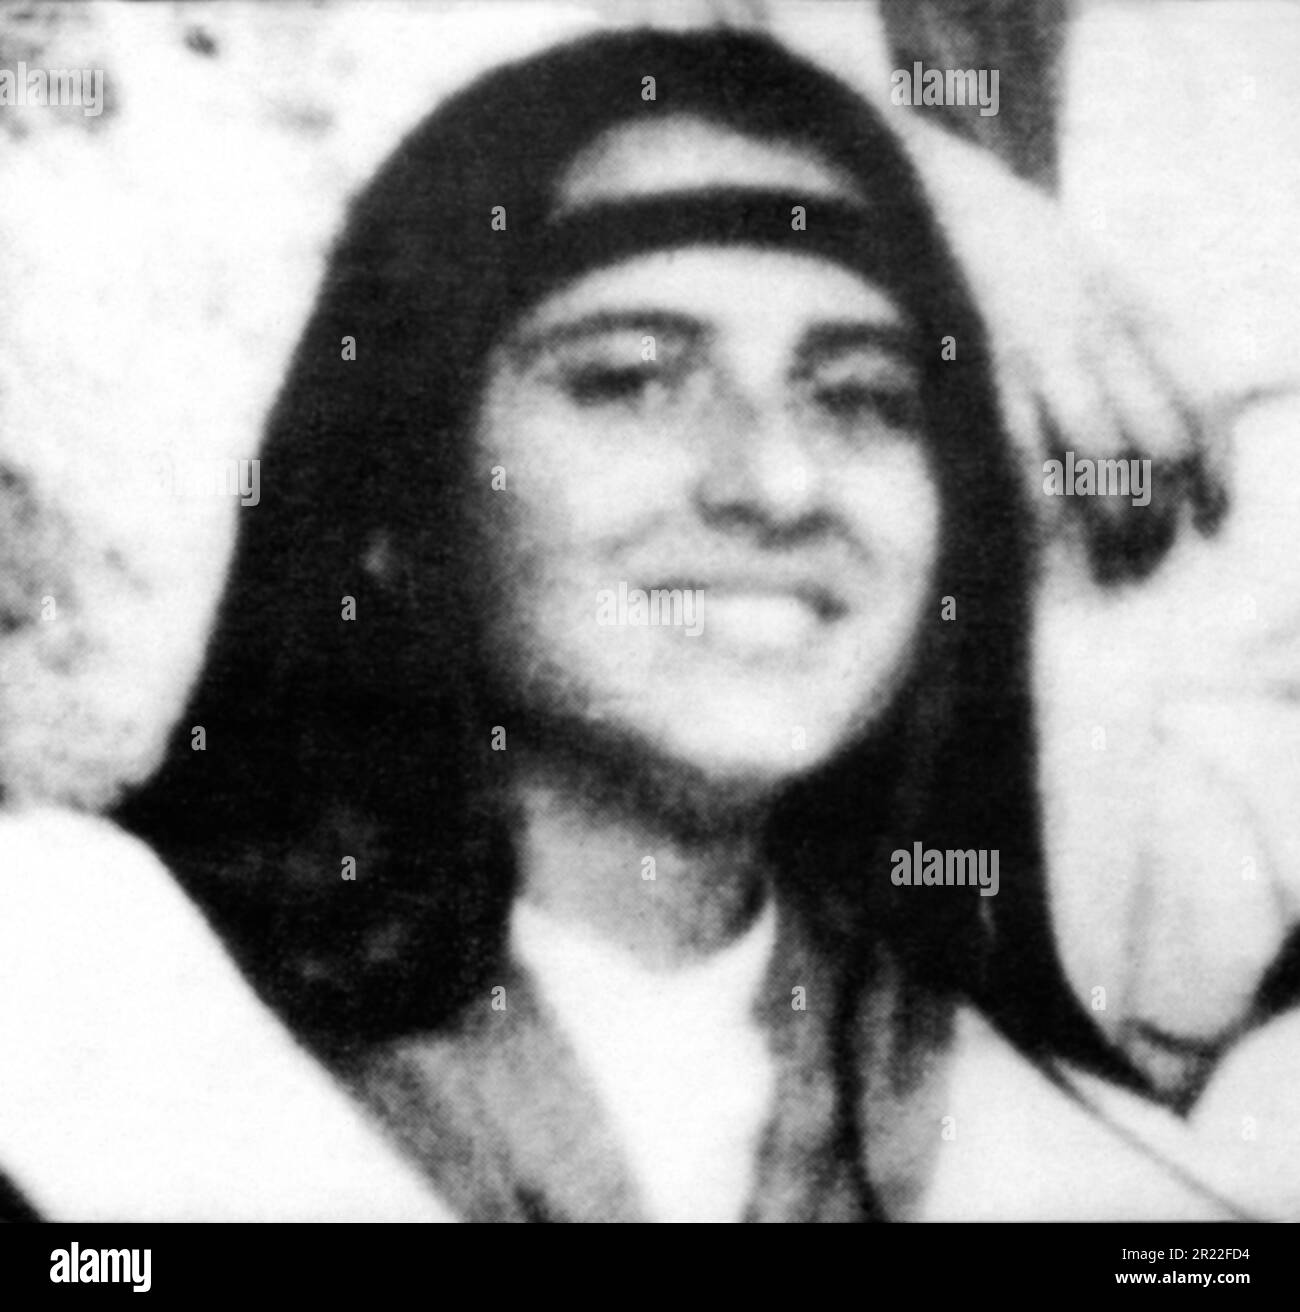 1983 , Rom , ITALIEN : das junge Mädchen EMANUELA ORLANDI ( 1968 - entführt 1983 ) . Eines der berühmtesten ungelösten Verbrechen der italienischen Geschichte. Erschien am Tag des 22 . juni 1983 , 15 Jahre alt . Auf diesem Foto ist das Porträt von Emanuela auf den Plakaten zu sehen , auf denen seine Entführung steht , die jahrelang die Mauern der Stadt Rom besputzt hat , und das auf Kosten der Familienmitglieder zu posten . Unbekannter Fotograf. - CRONACA NERA - Entführung - Entführung - Porträt - Rituto - Sparizione - Sparizione - Sparita - BELOHNUNG - SCOMPARSA - RAPIMENTO - MISTERO - MISTERY - Kriminelle - criminalità Stockfoto